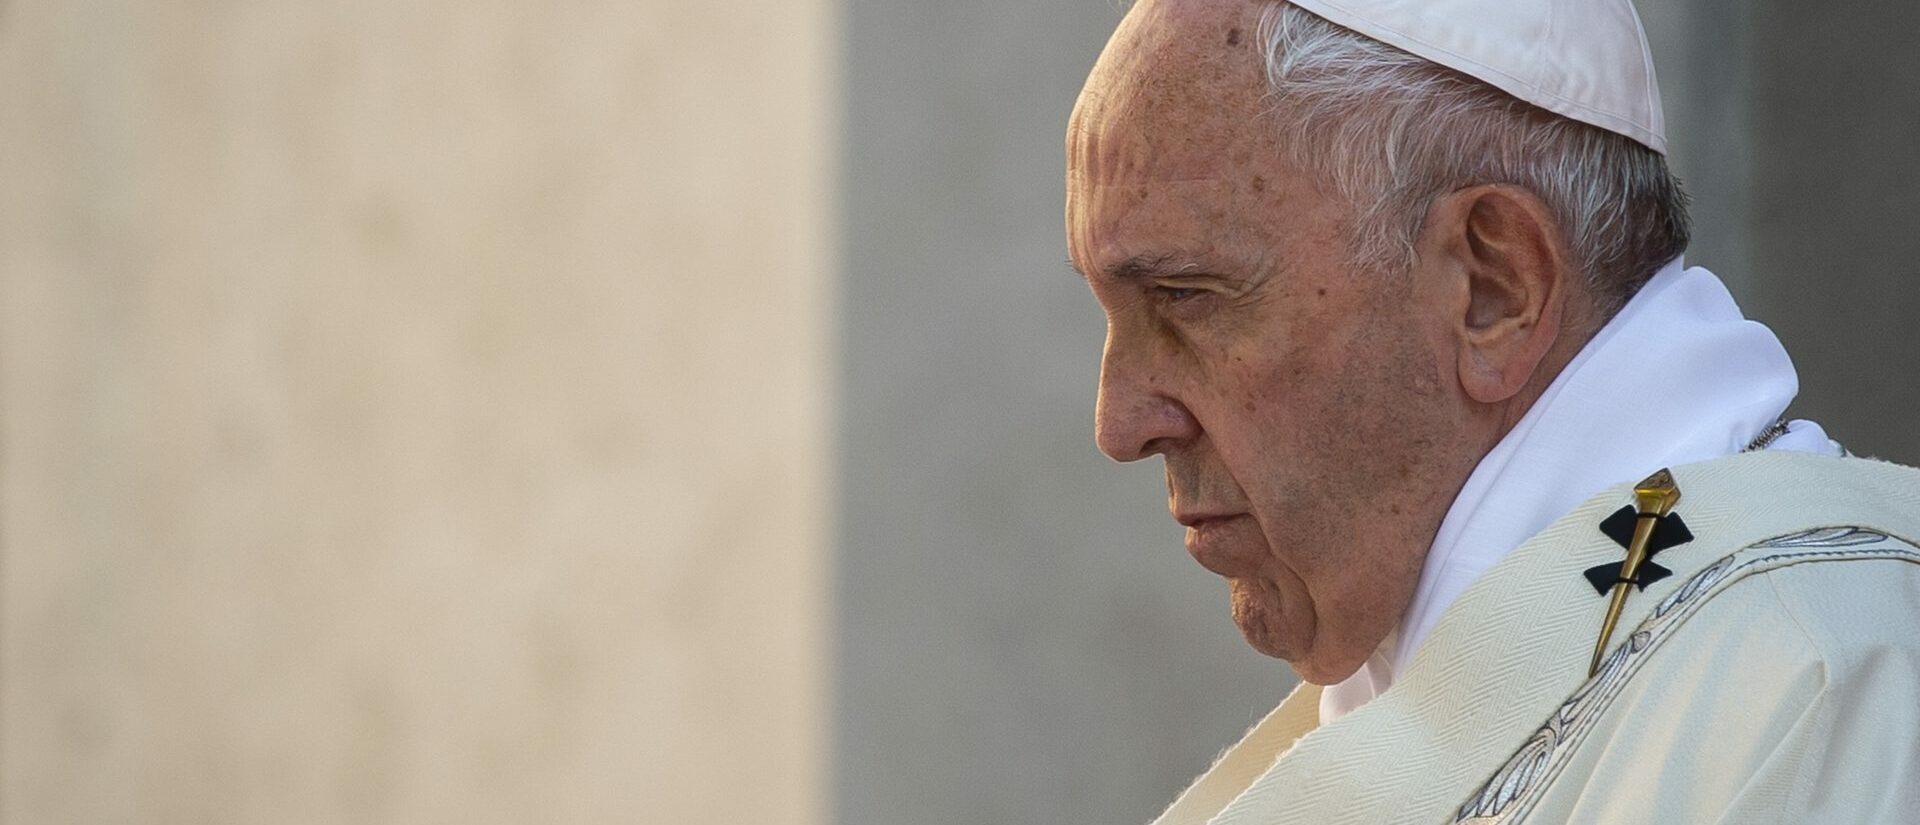 Le pape François souffre depuis longtemps des hanches | photo d'illustration © Antoine Mekary I.Media